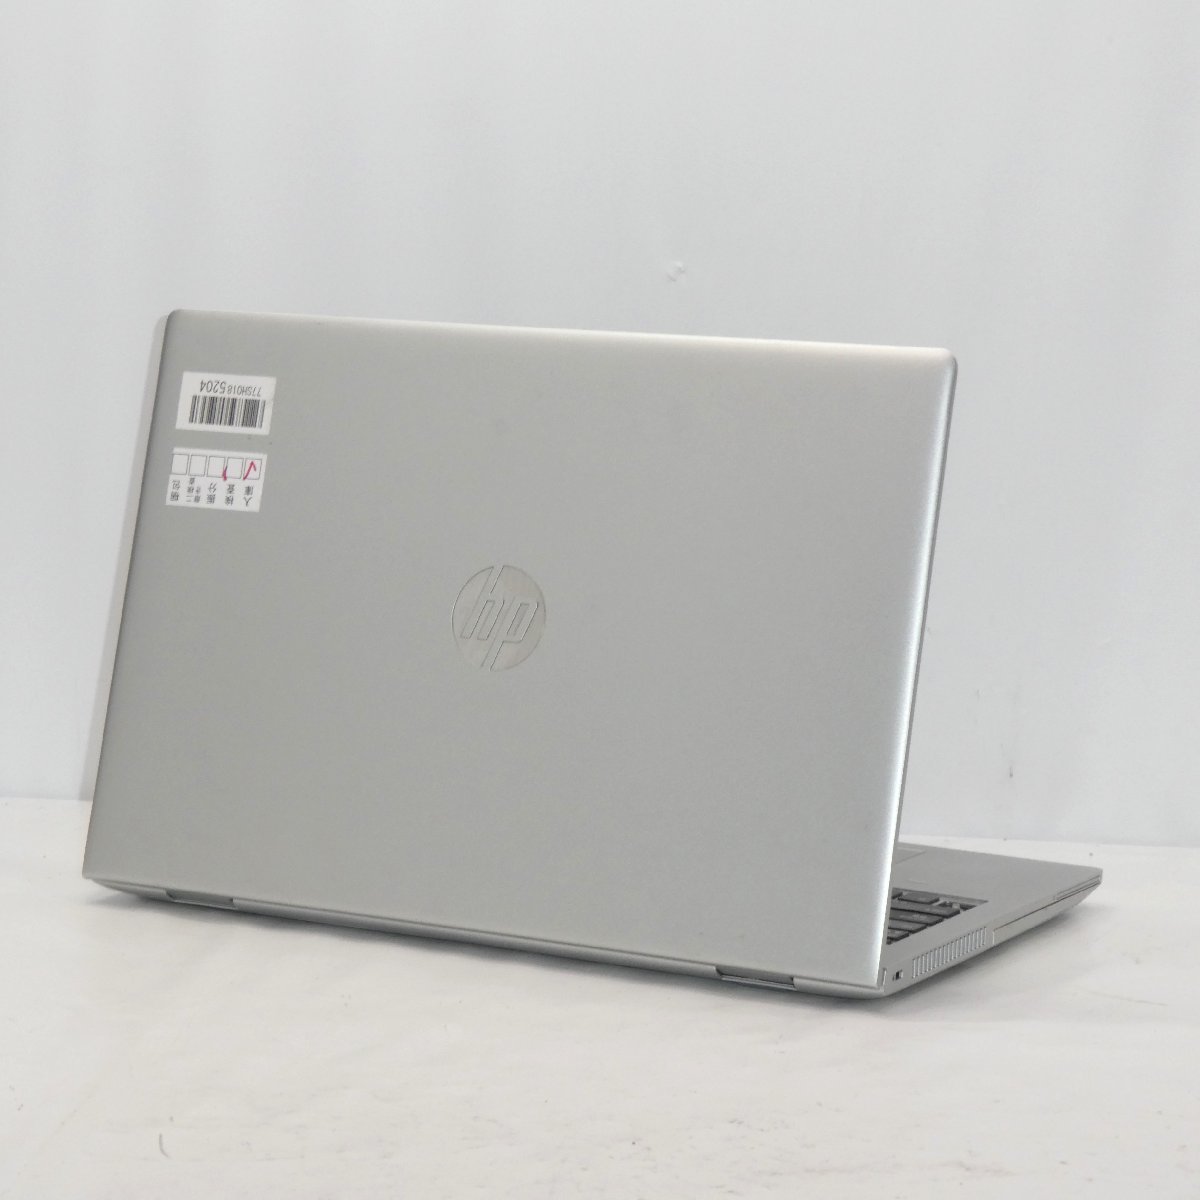 【ジャンク】HP ProBook 650 G4 Core i3-8130U 2.2GHz/8GB/HDD500GB/DVD/15インチ/OS無【栃木出荷】_画像2